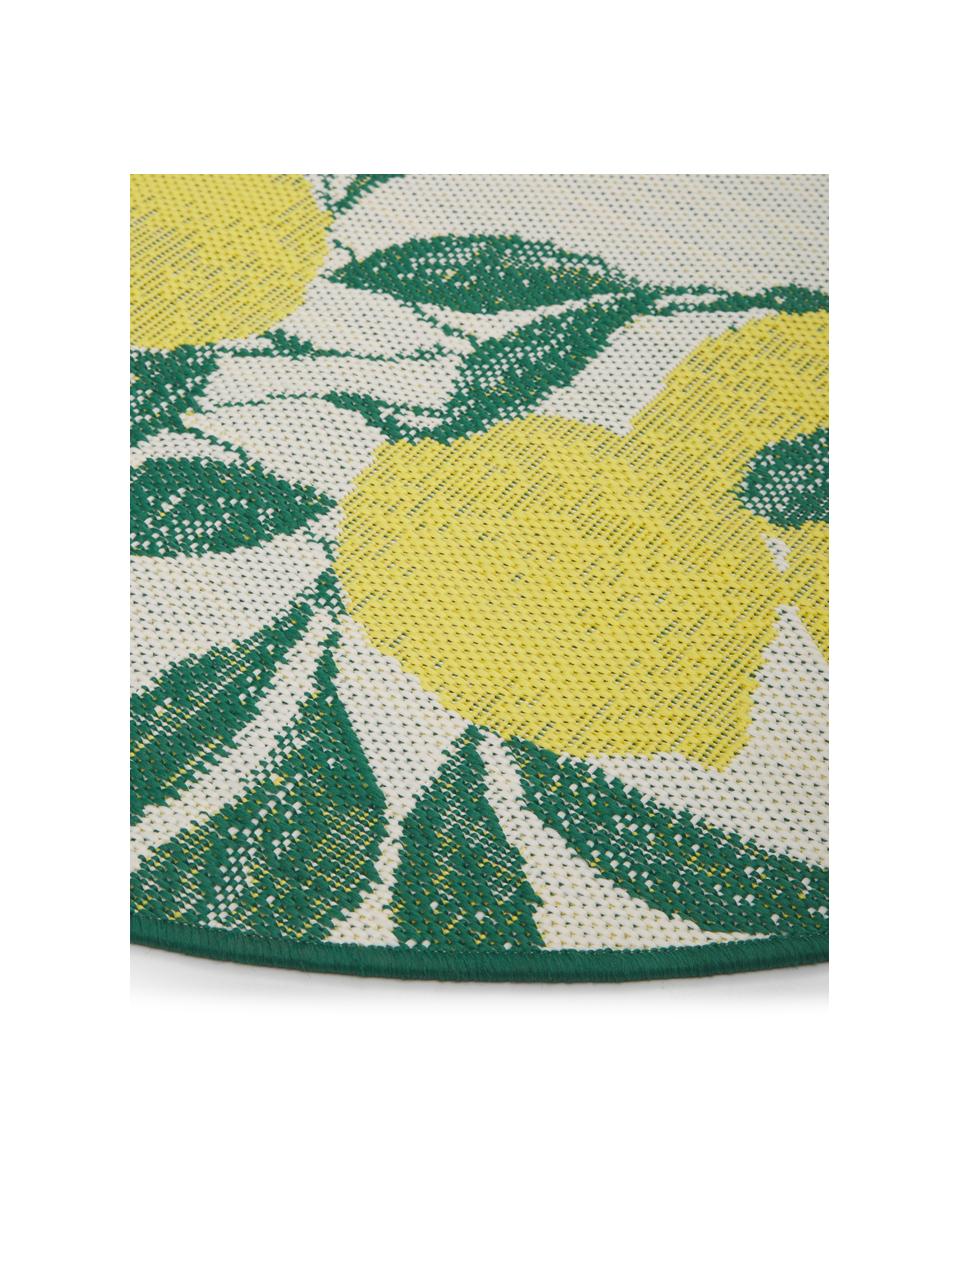 In- & Outdoor-Teppich Limonia mit Zitronen Print, 86% Polypropylen, 14% Polyester, Weiss,Gelb,Grün, Ø 140 cm (Grösse M)